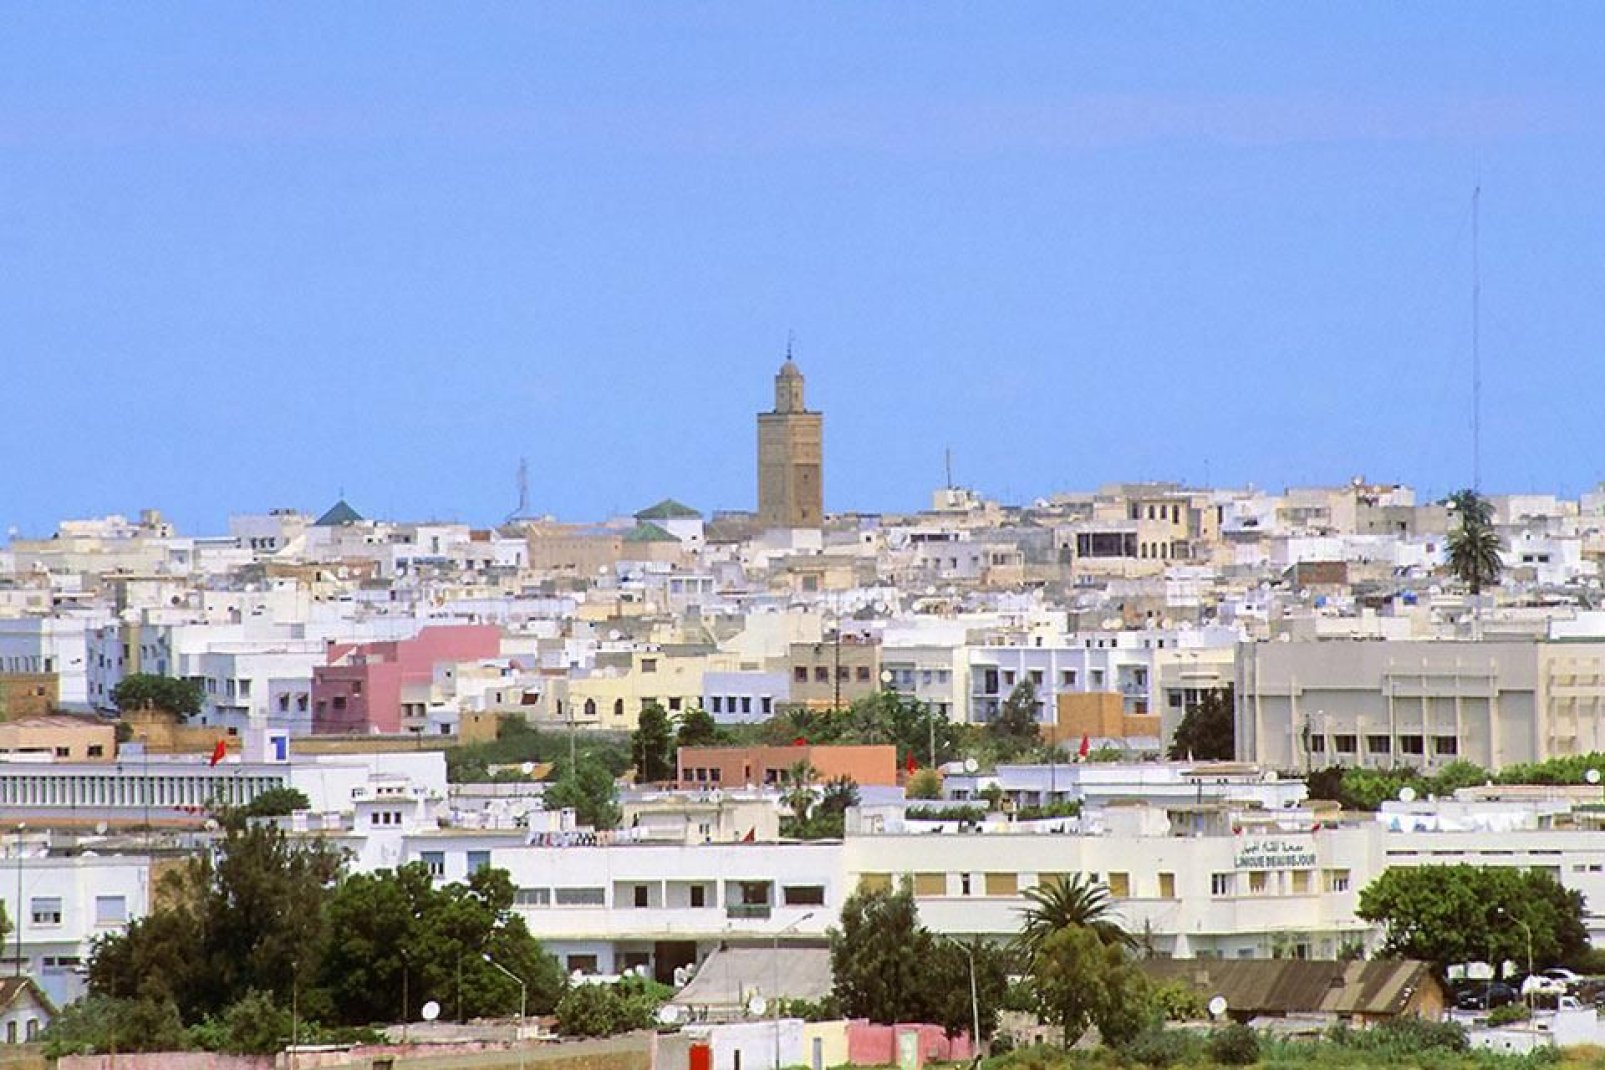 Die historische Stadt Rabat beheimatet innerhalb ihrer Stadtmauern zahlreiche, wertvolle Kulturschätze. Moschee, jüdisches Viertel, Kasbah der Oudaias... diese Stadt ist wirklich einen Ausflug wert!